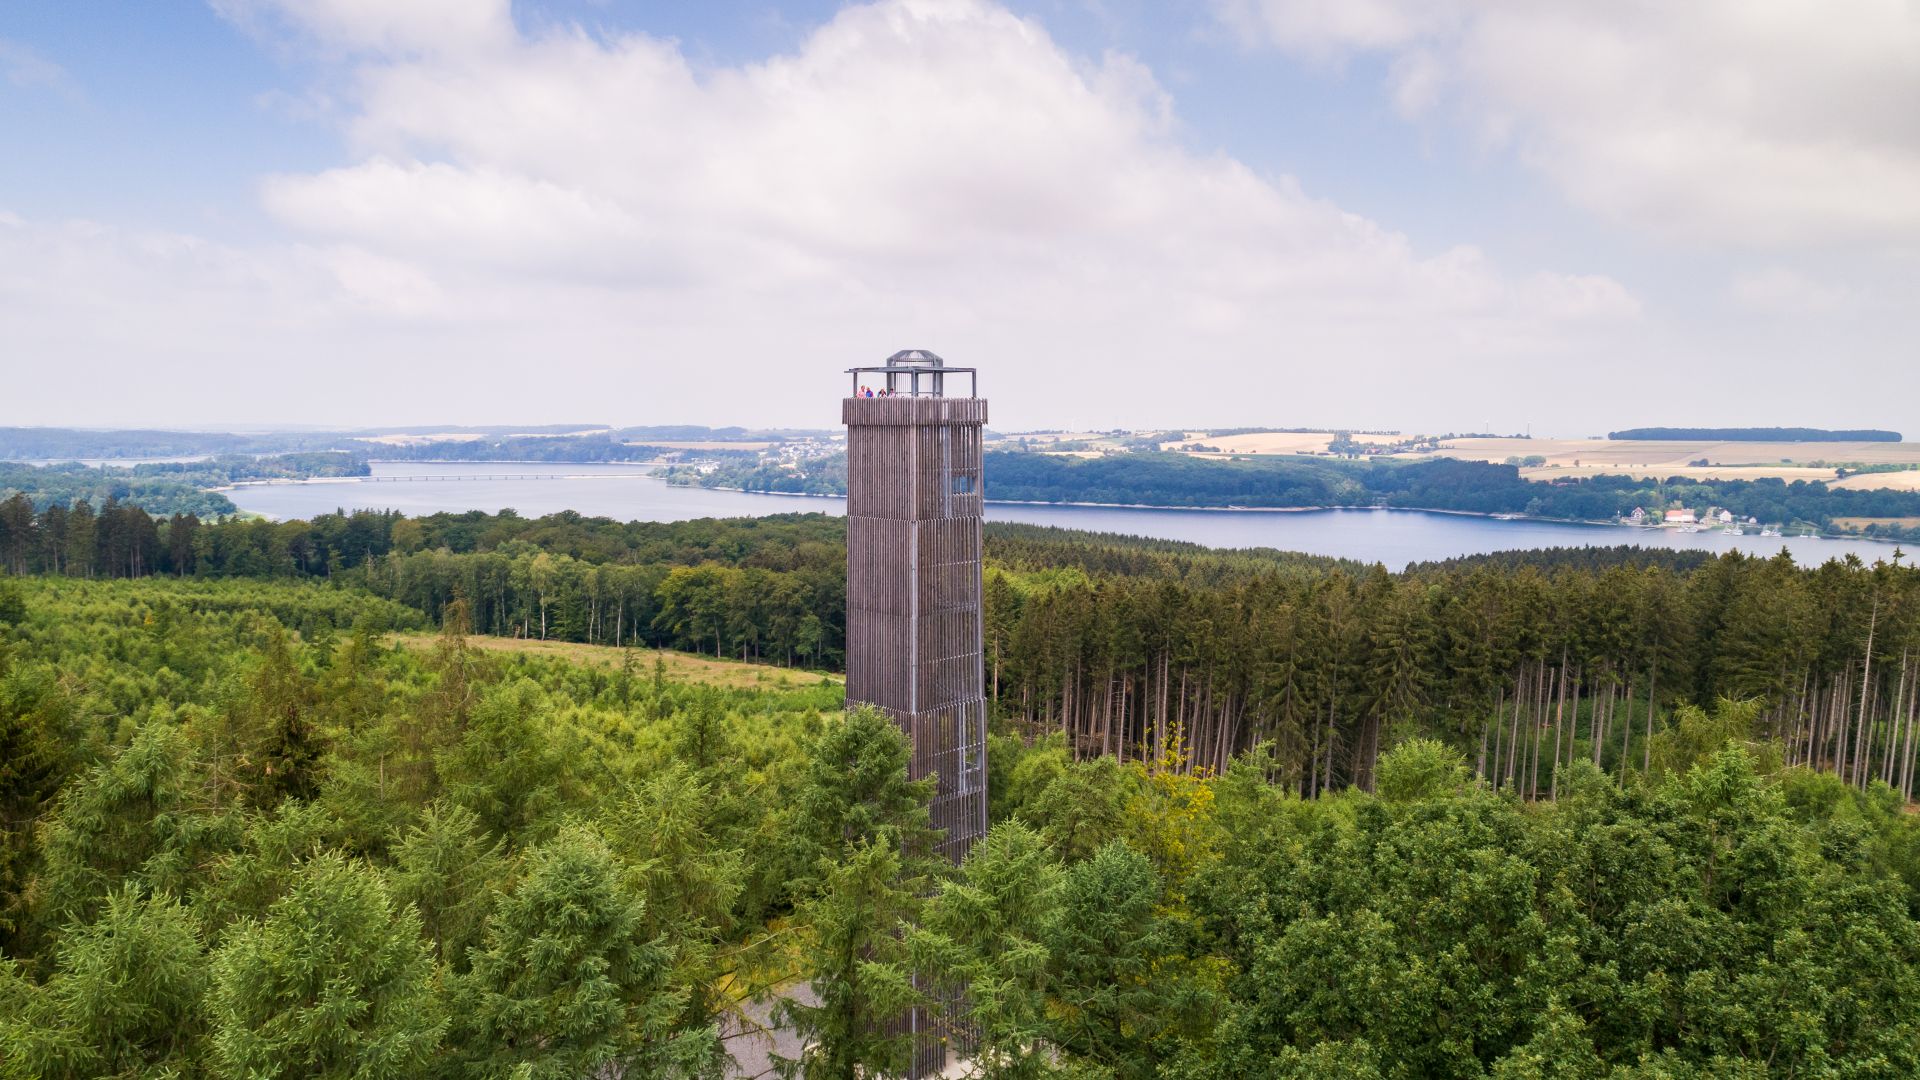 Möhnesee : Möhneturm dans le parc naturel de la forêt d'Arnsberg